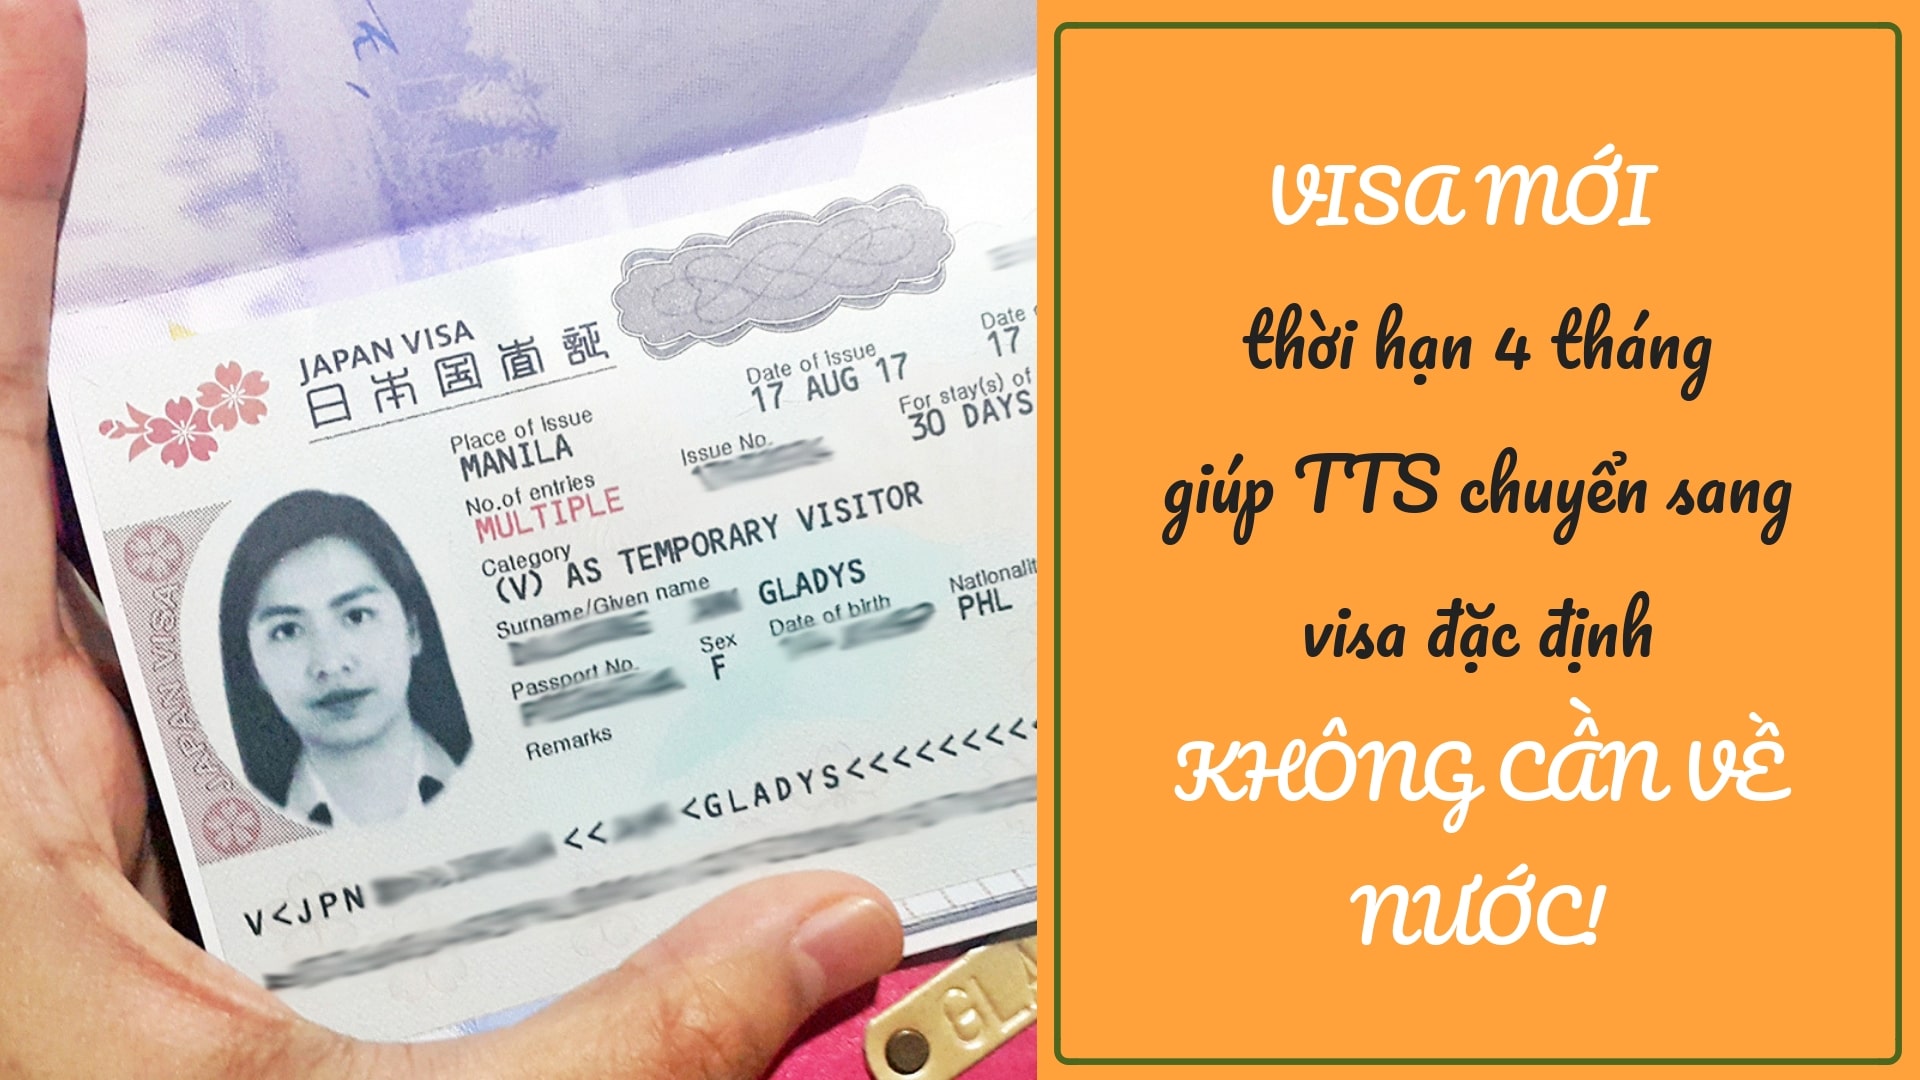 TTS 3 năm CÓ THỂ chuyển sang visa đặc định mà KHÔNG CẦN về nước?